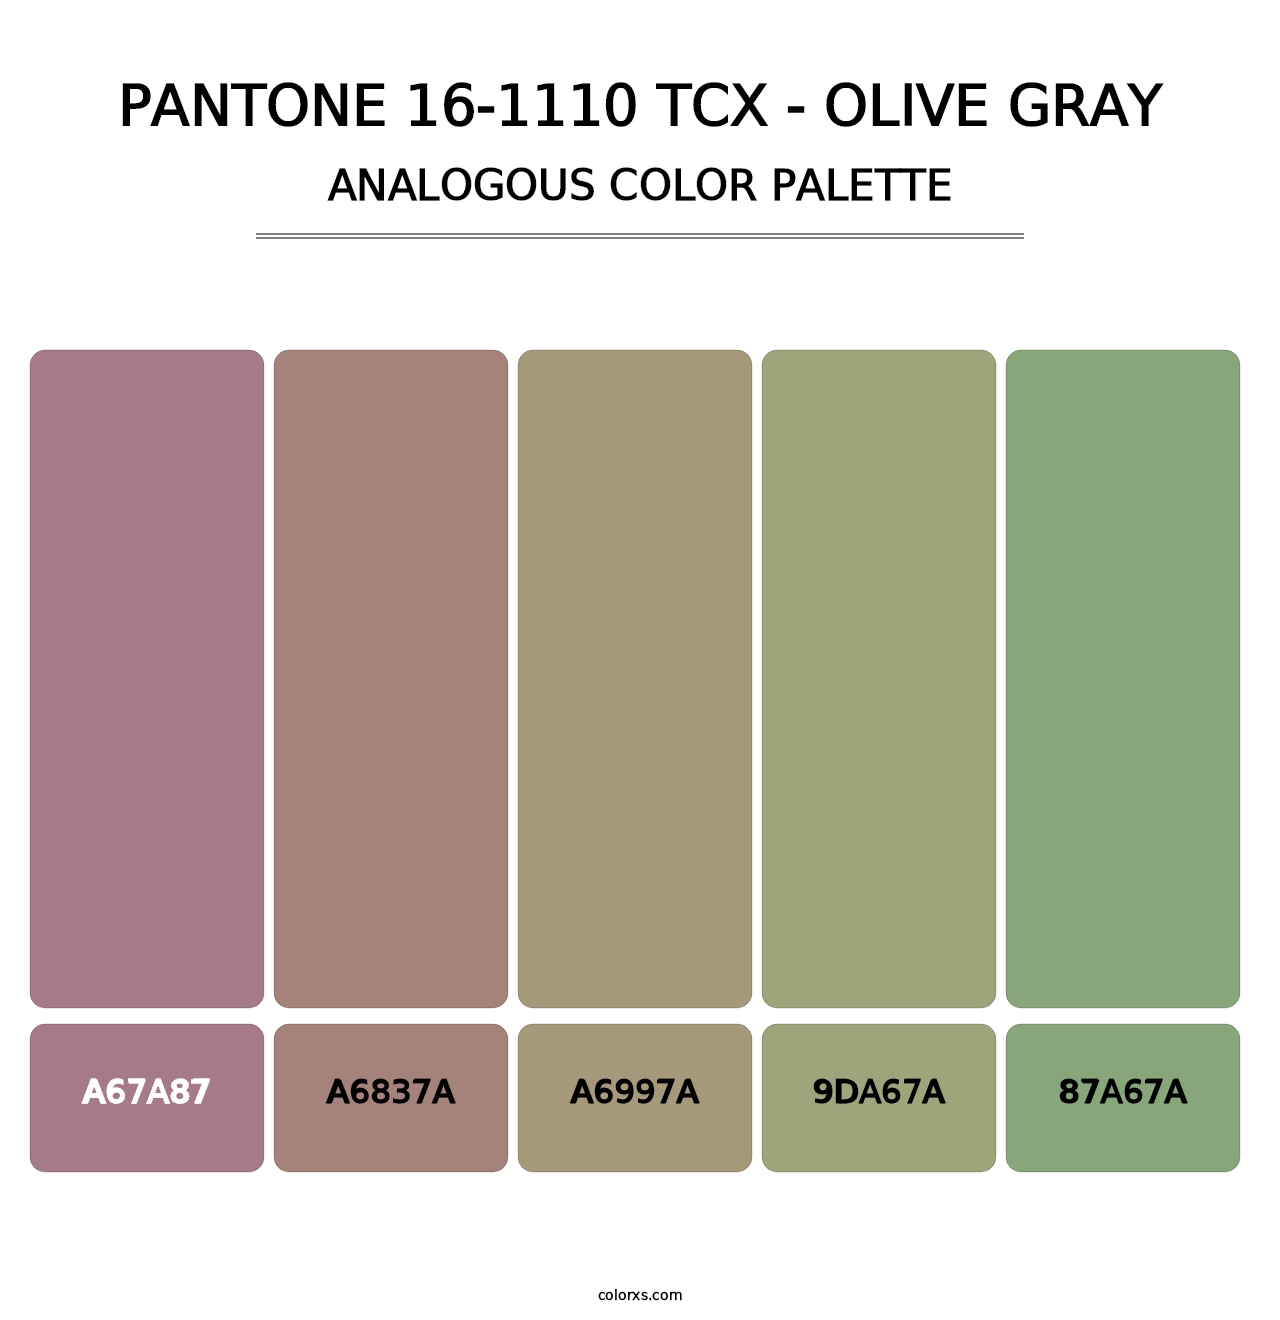 PANTONE 16-1110 TCX - Olive Gray - Analogous Color Palette